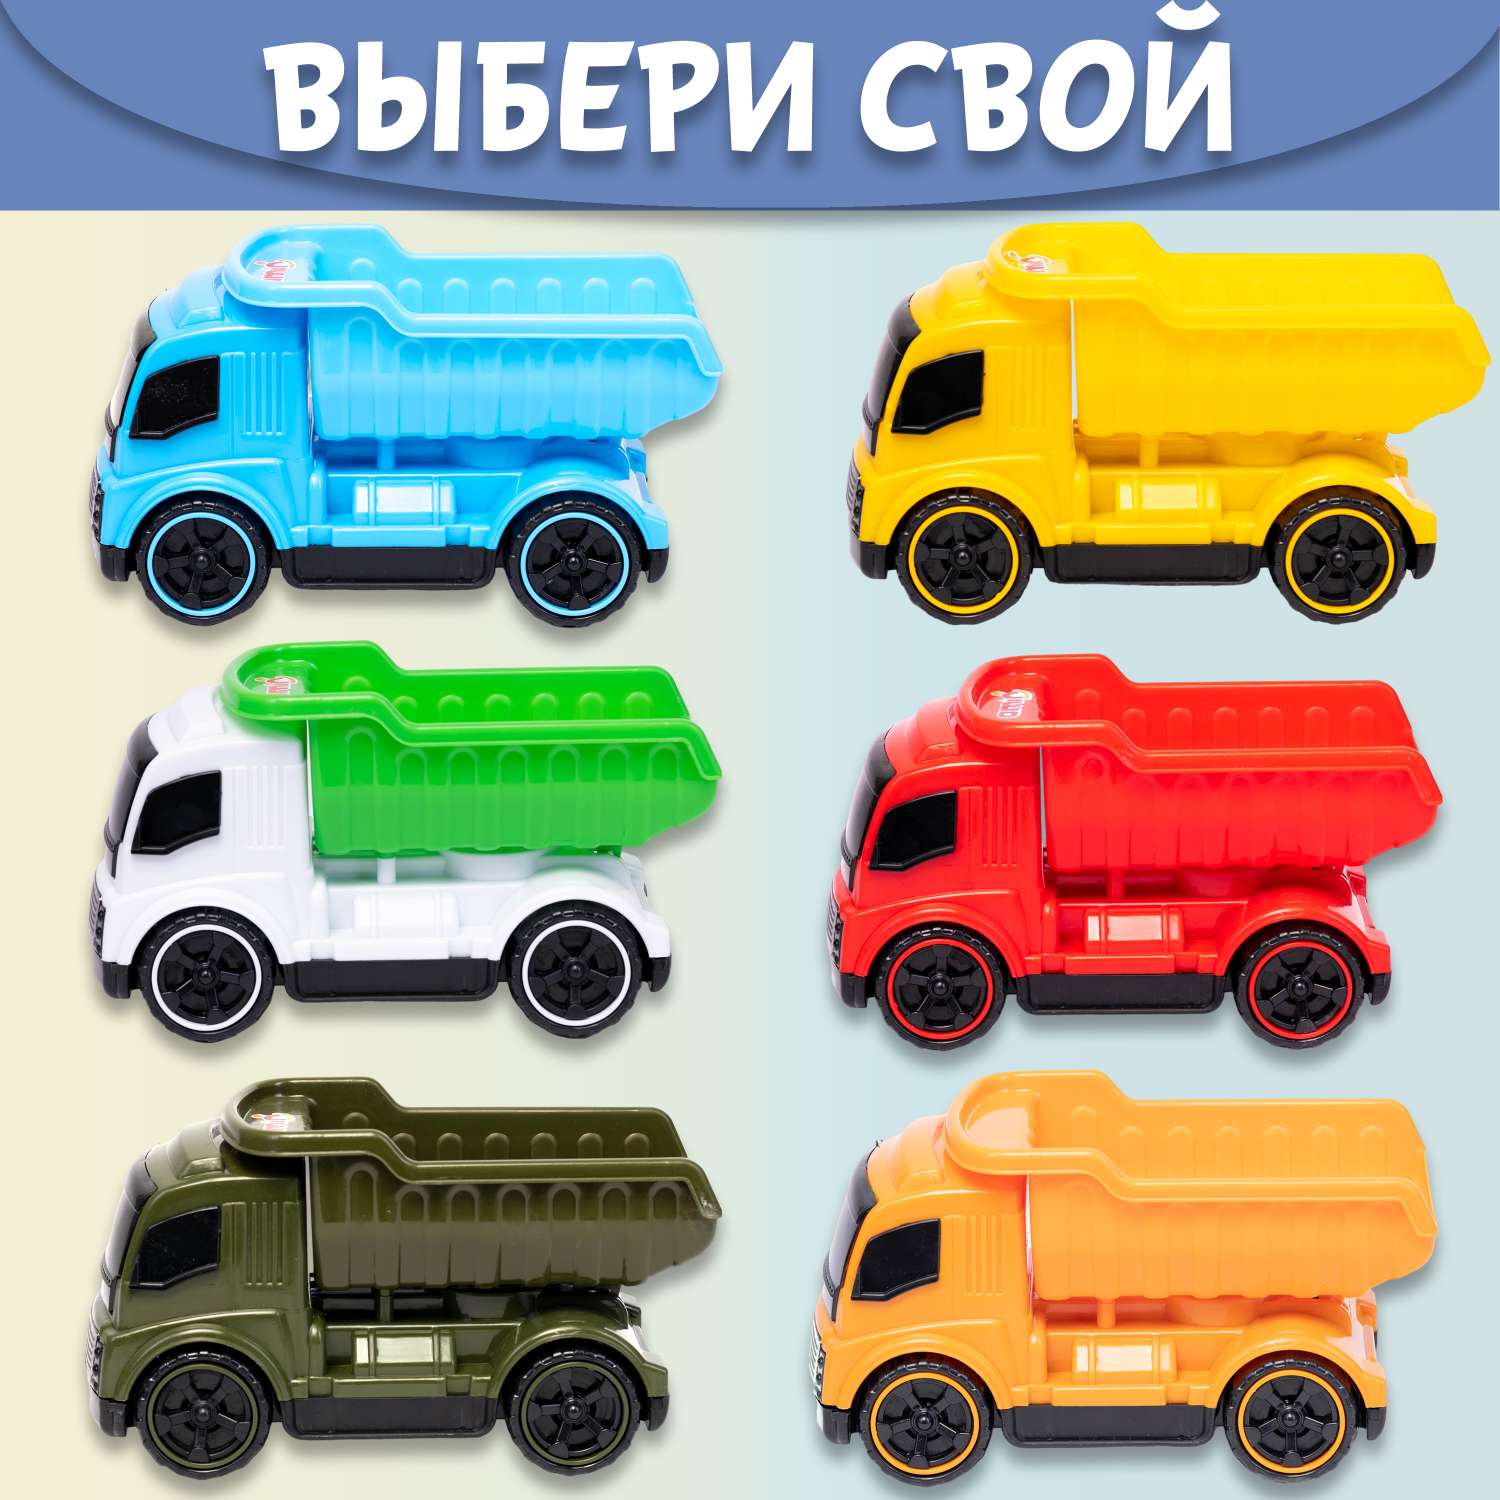 Машинка Нижегородская игрушка Самосвал бело-зеленый ктг270_б/зел - фото 8